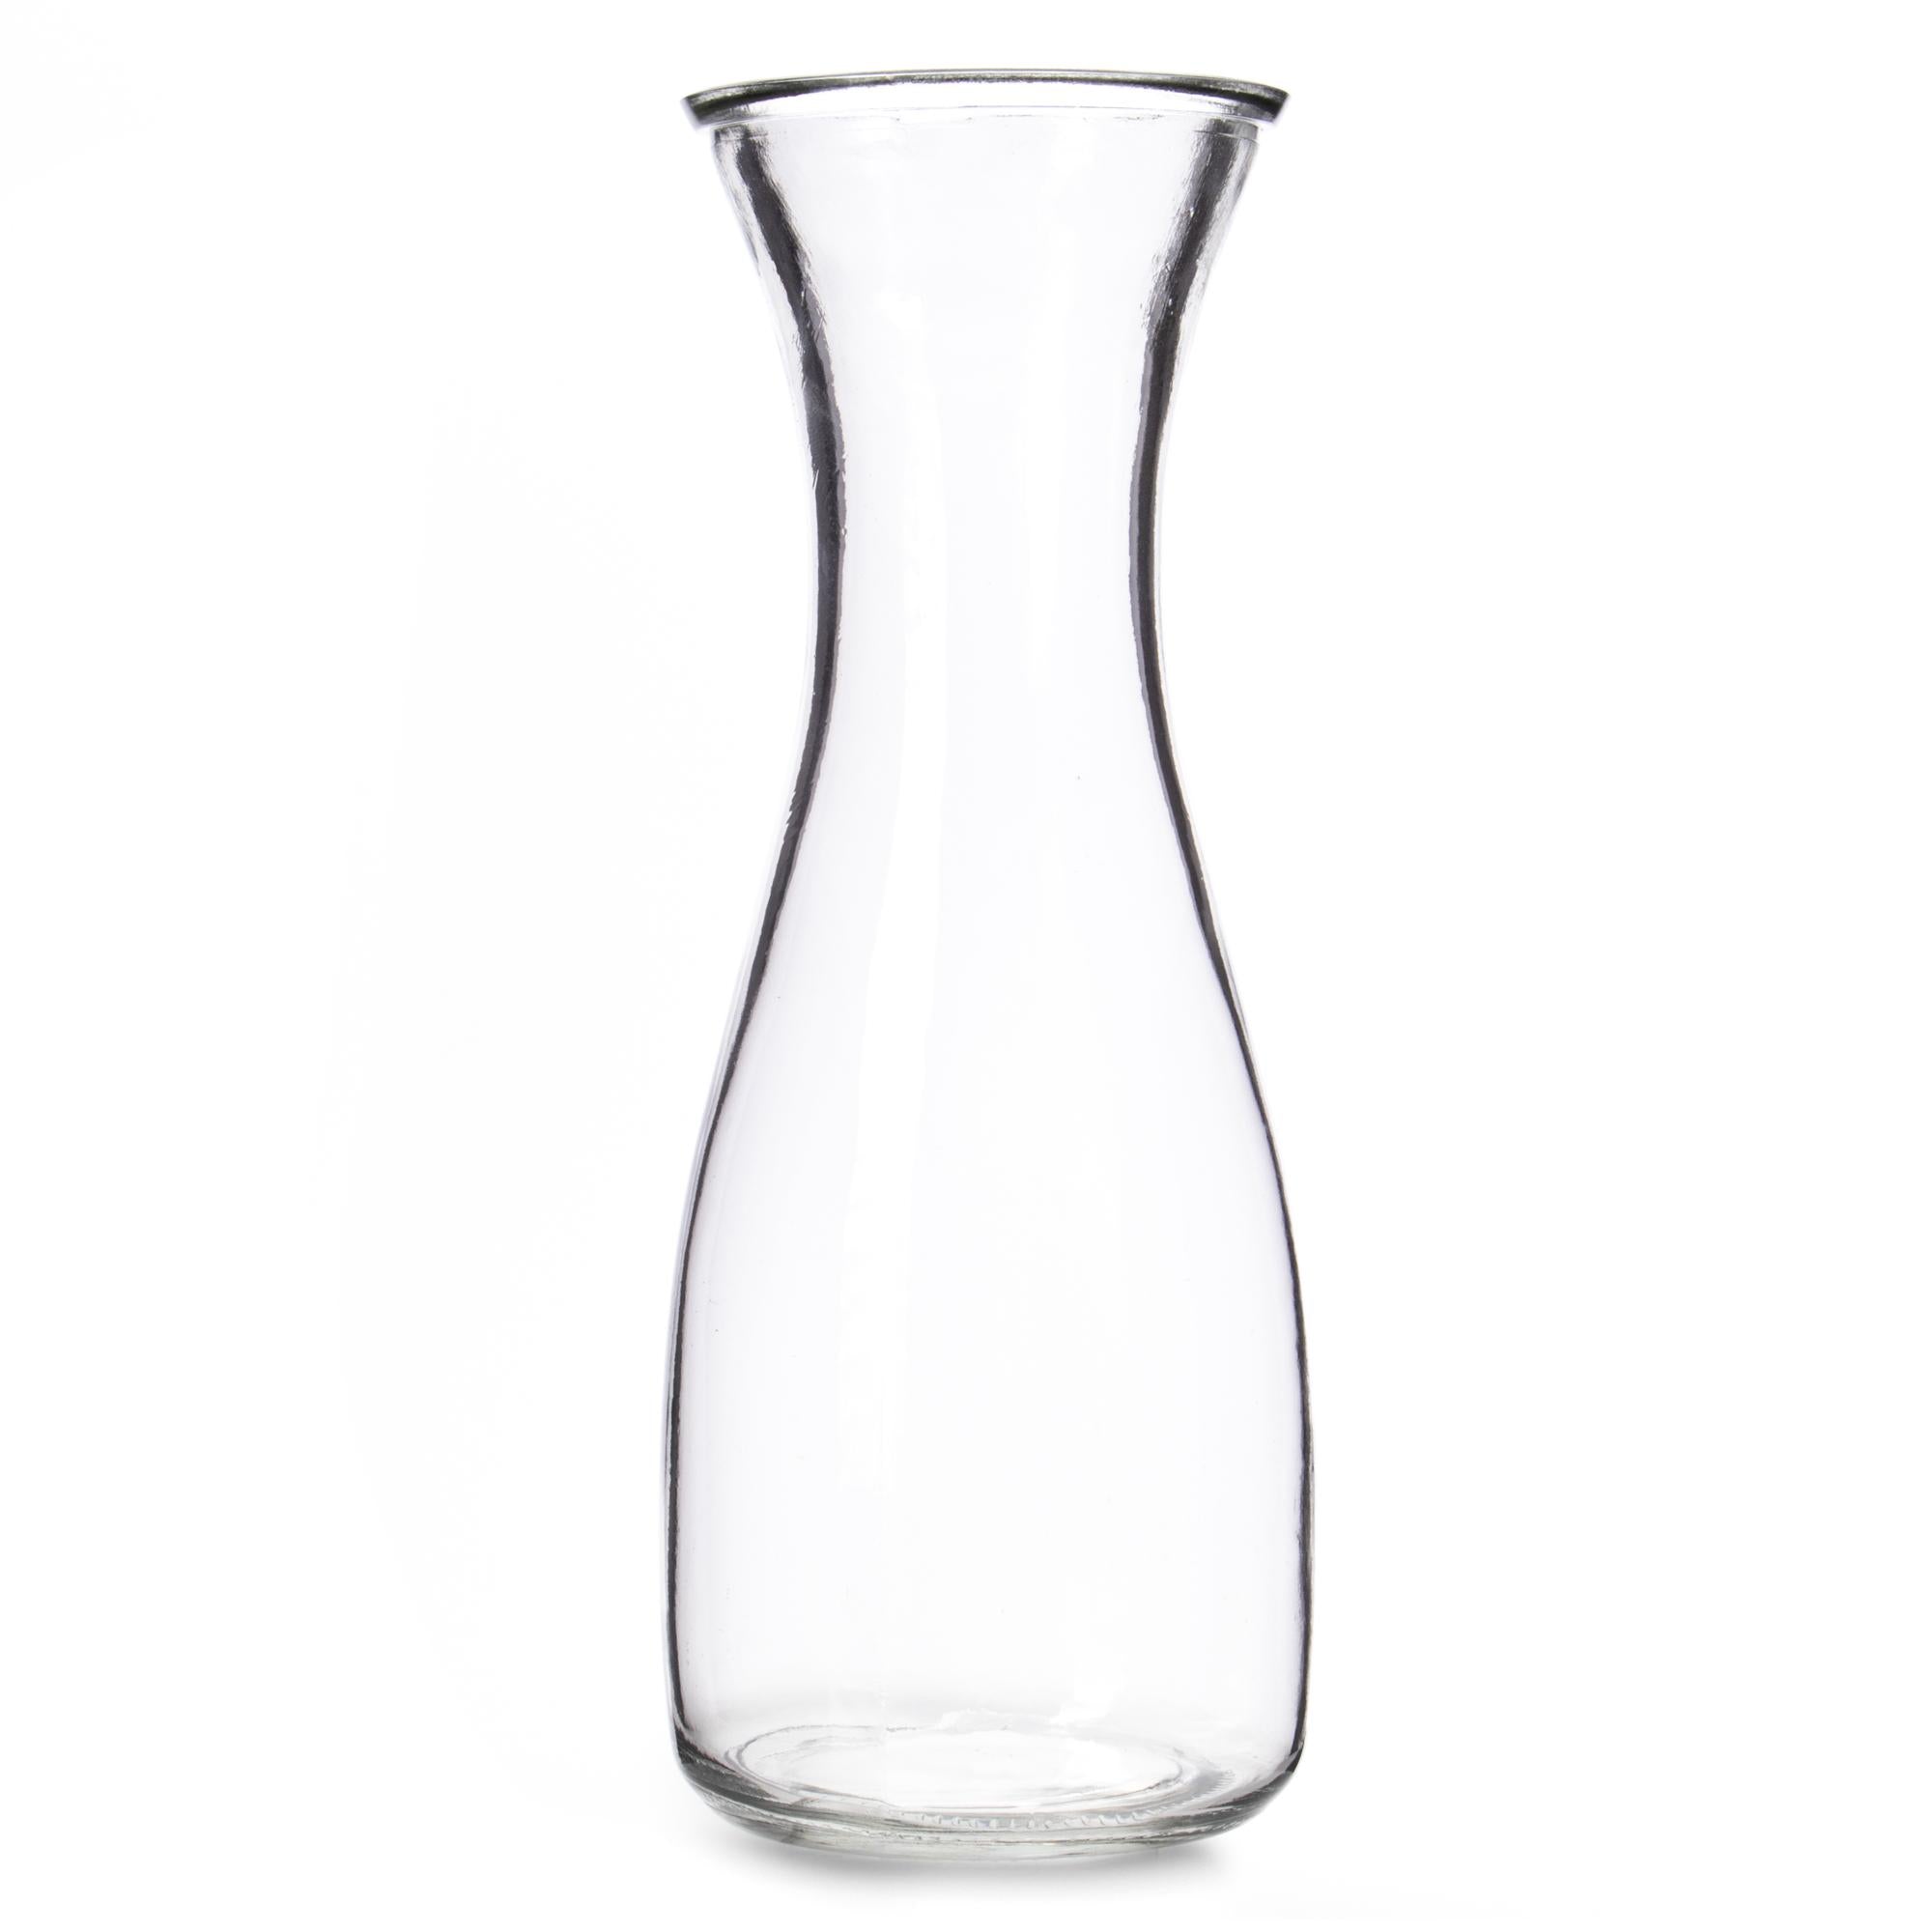 34 oz. (1 Liter) Glass Beverage Carafe